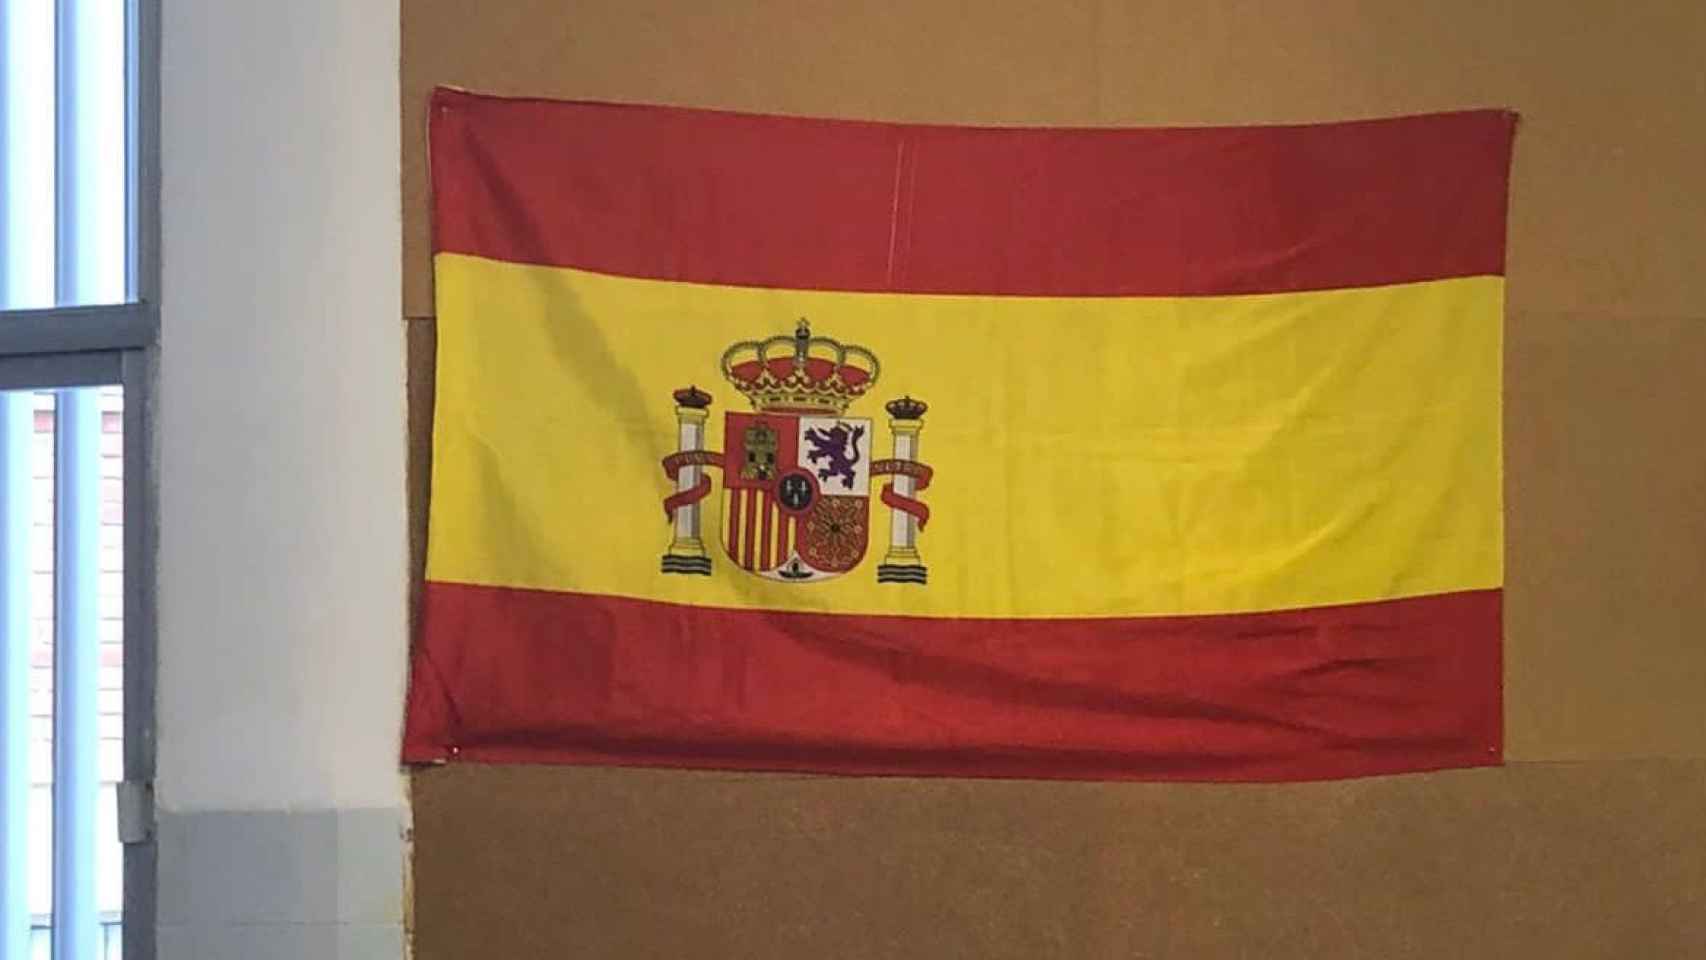 Hablan los expulsados por colgar una bandera de España: "Tendremos que acatar o cambiar de cole" thumbnail